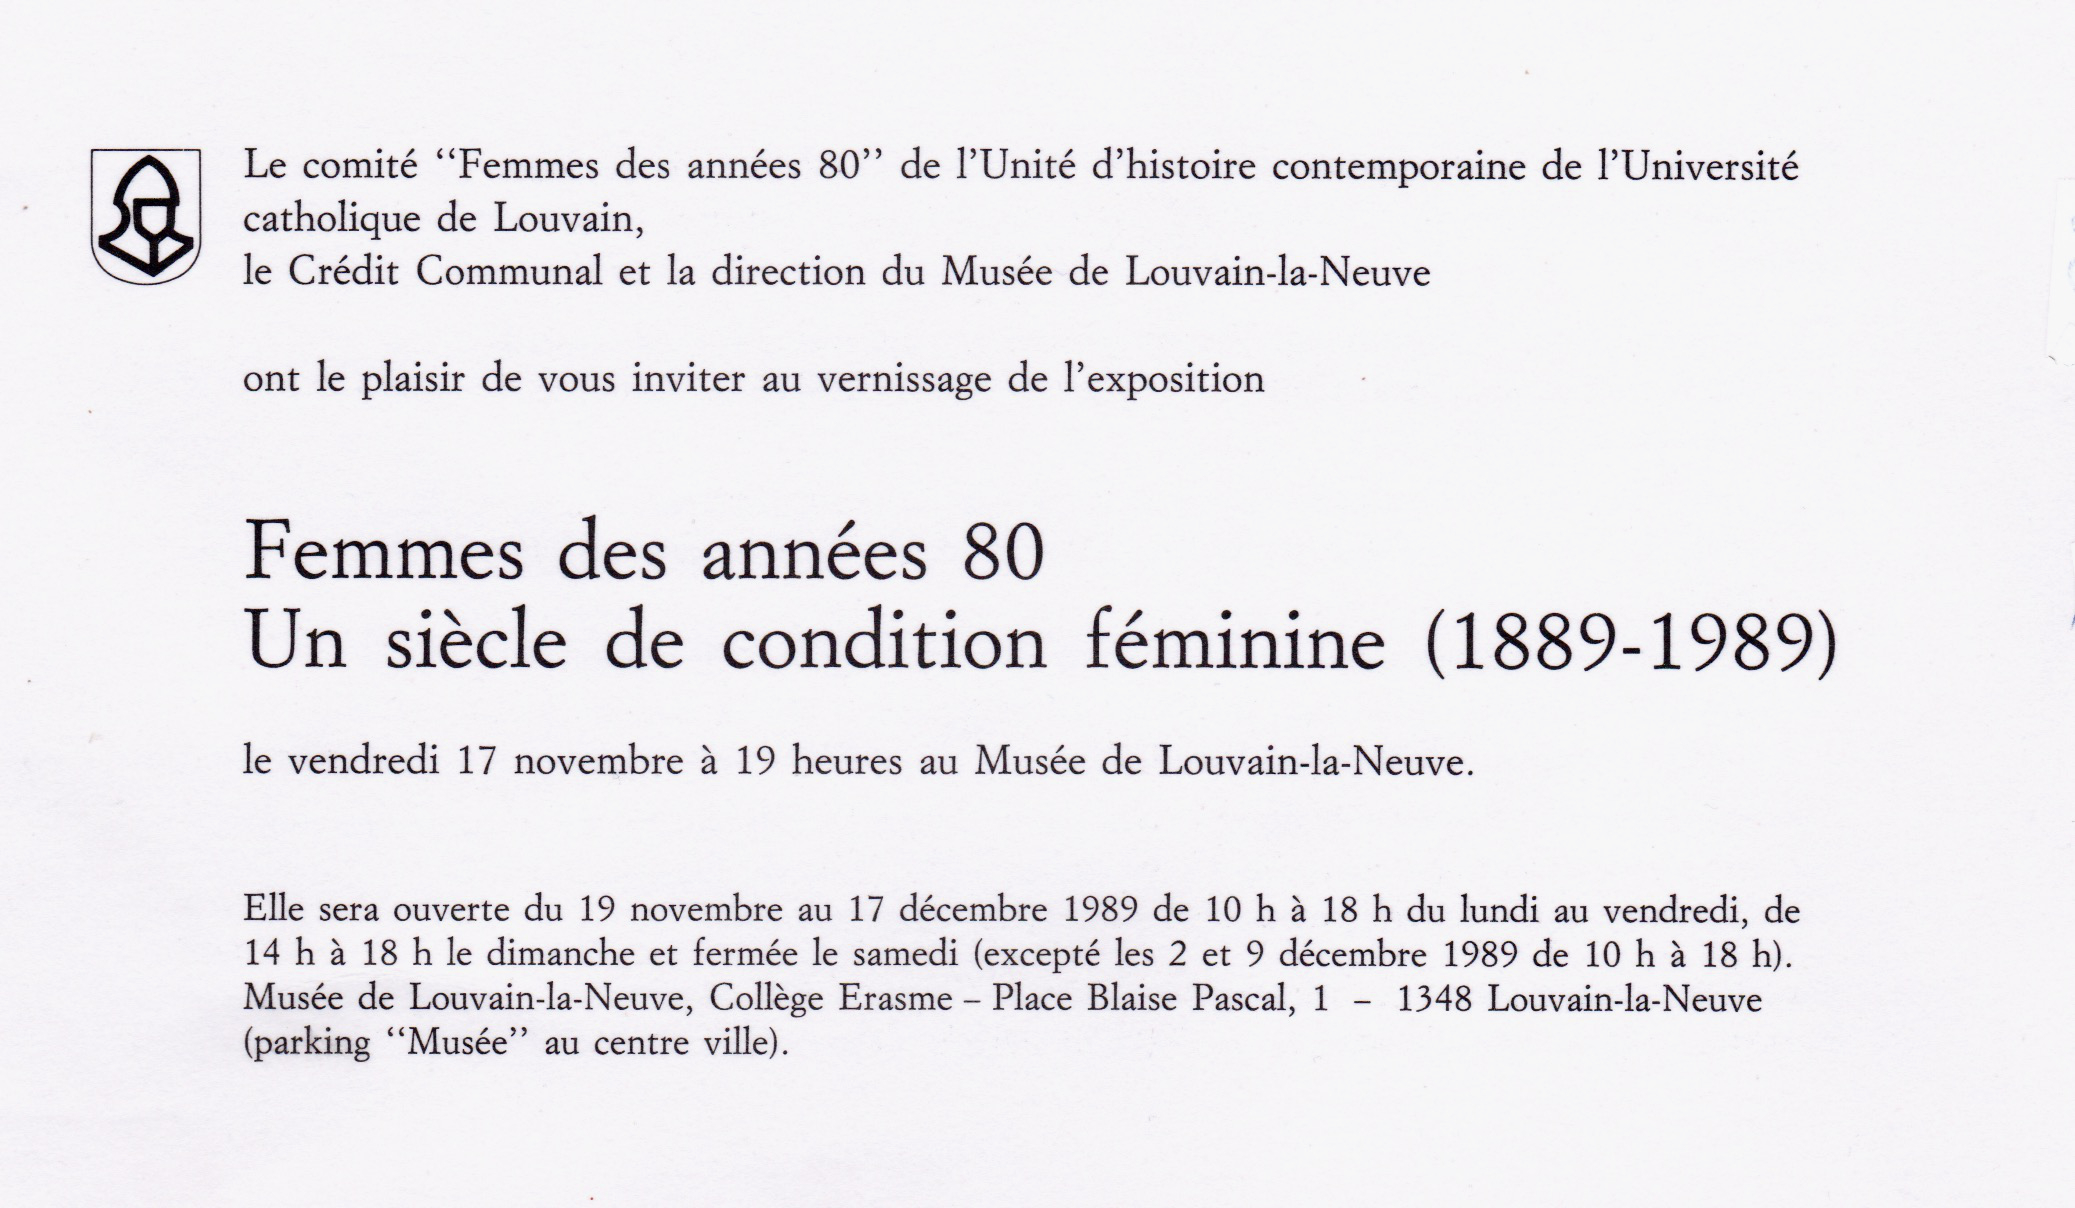 Femmes des années 80, Un siècle de condition féminine, musée L, louvain-la-neuve, 1989